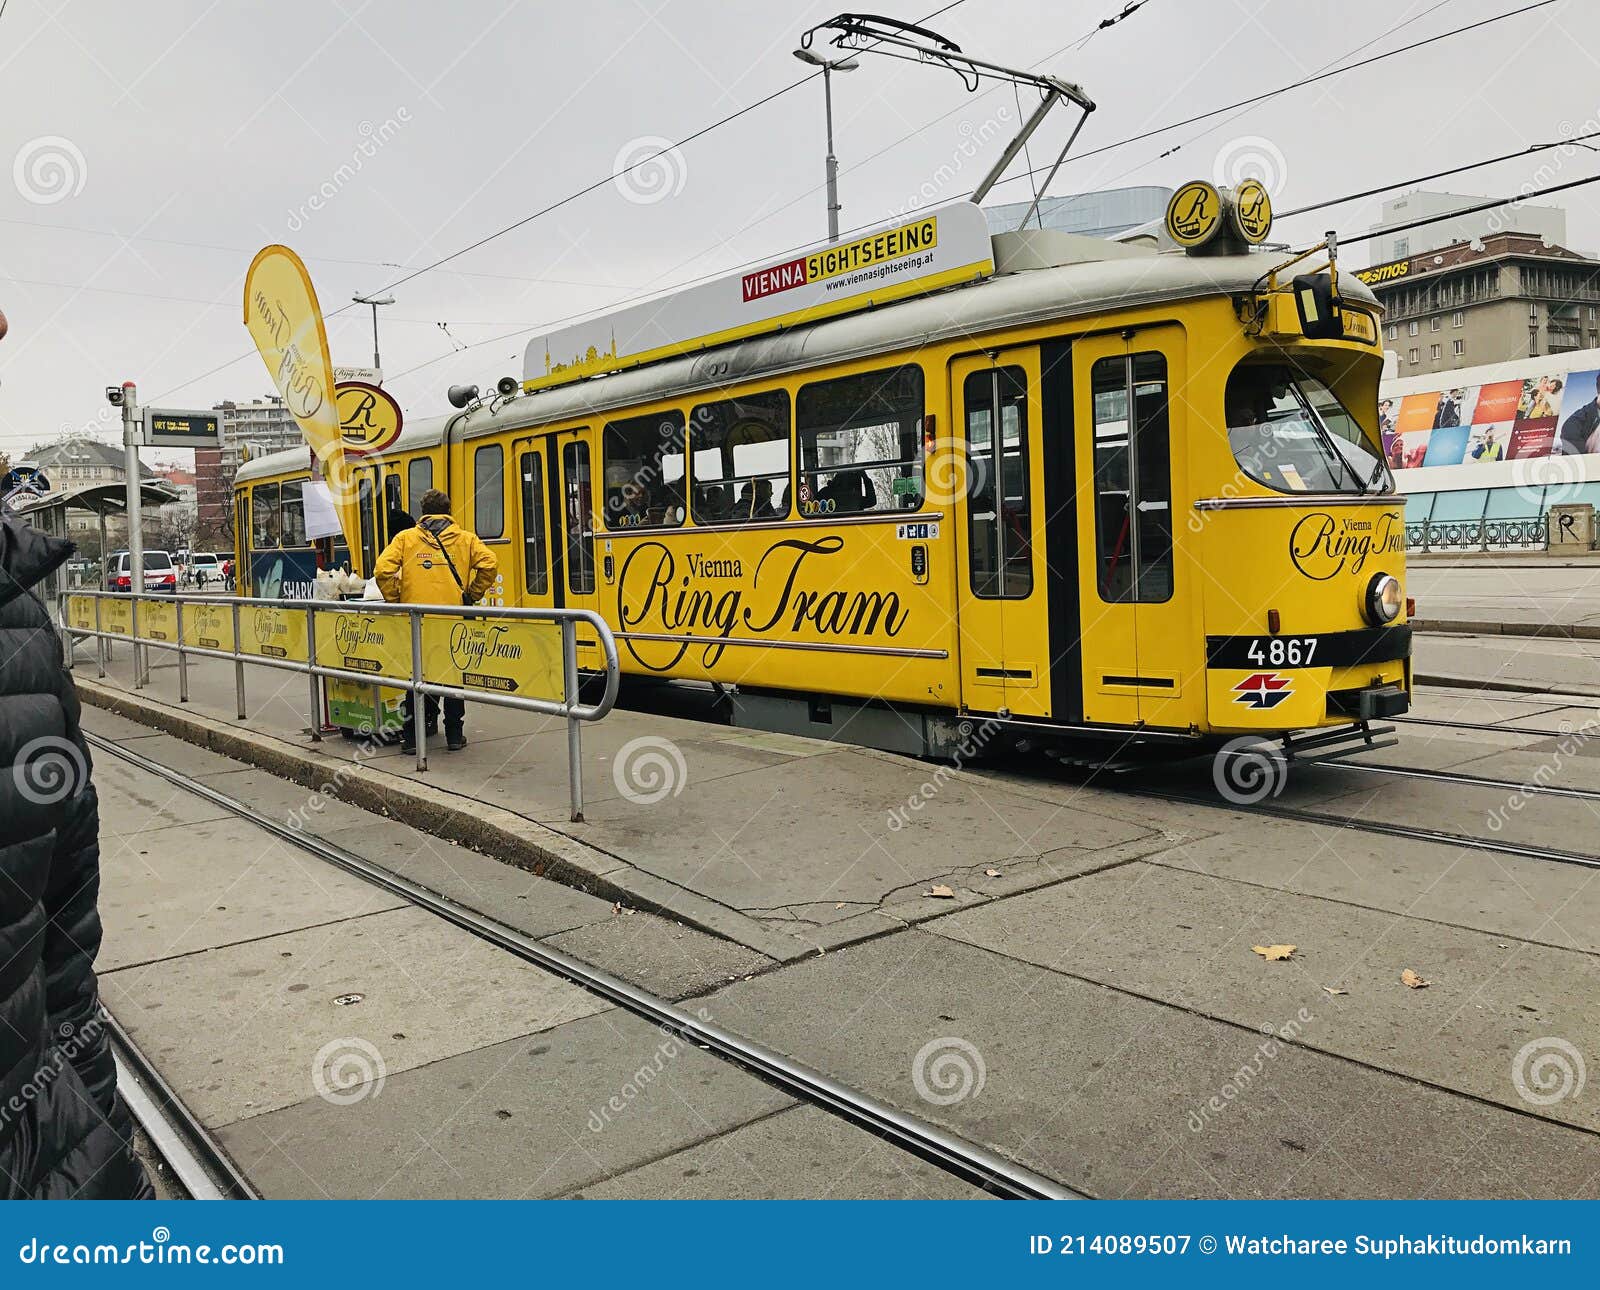 סיור טראם בוינה (Vienna Ring Tram Sightseeing) בוינה - כרטיסים, מחירים,  שעות פתיחה, המלצות וטיפים | אתר למטייל